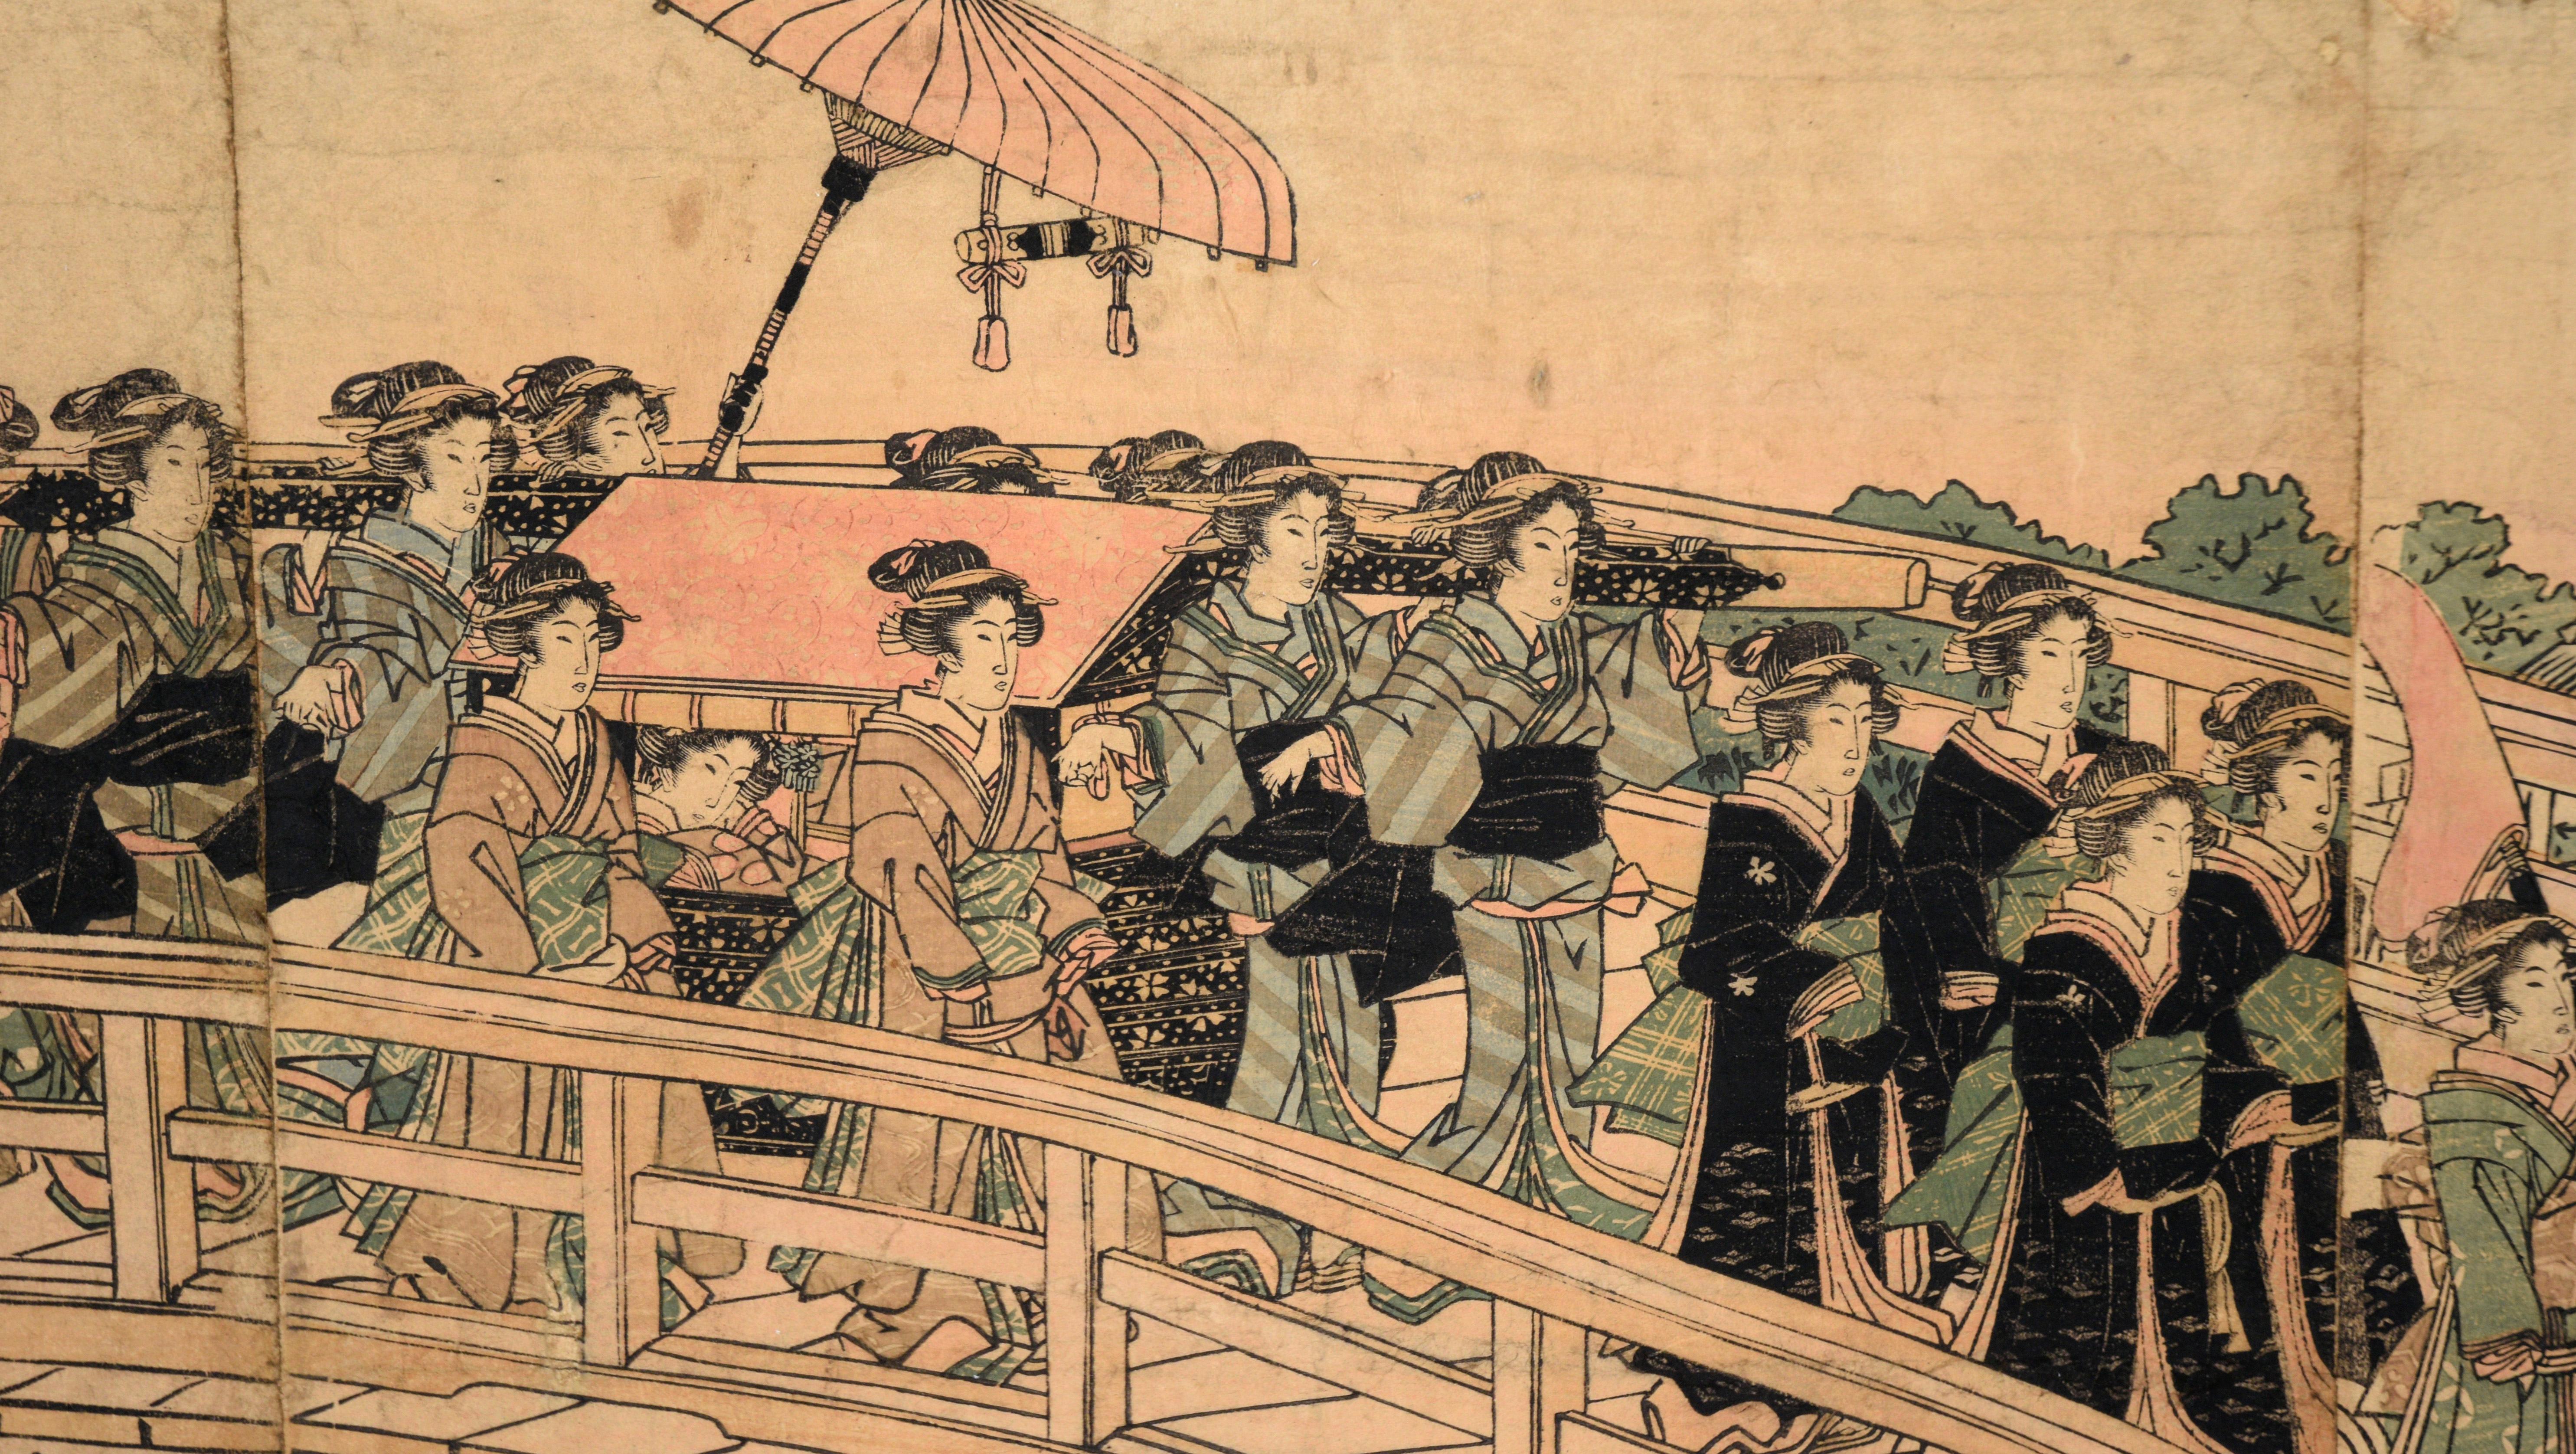 Impression sur bois représentant la procession de Daimyo franchissant le pont Ryogoku

Gravure sur bois d'une procession par Keisai Eisen (japonais, 1790-1848). Terrible triptyque d'une procession de jeunes femmes traversant le pont d'Edo à Edo dans